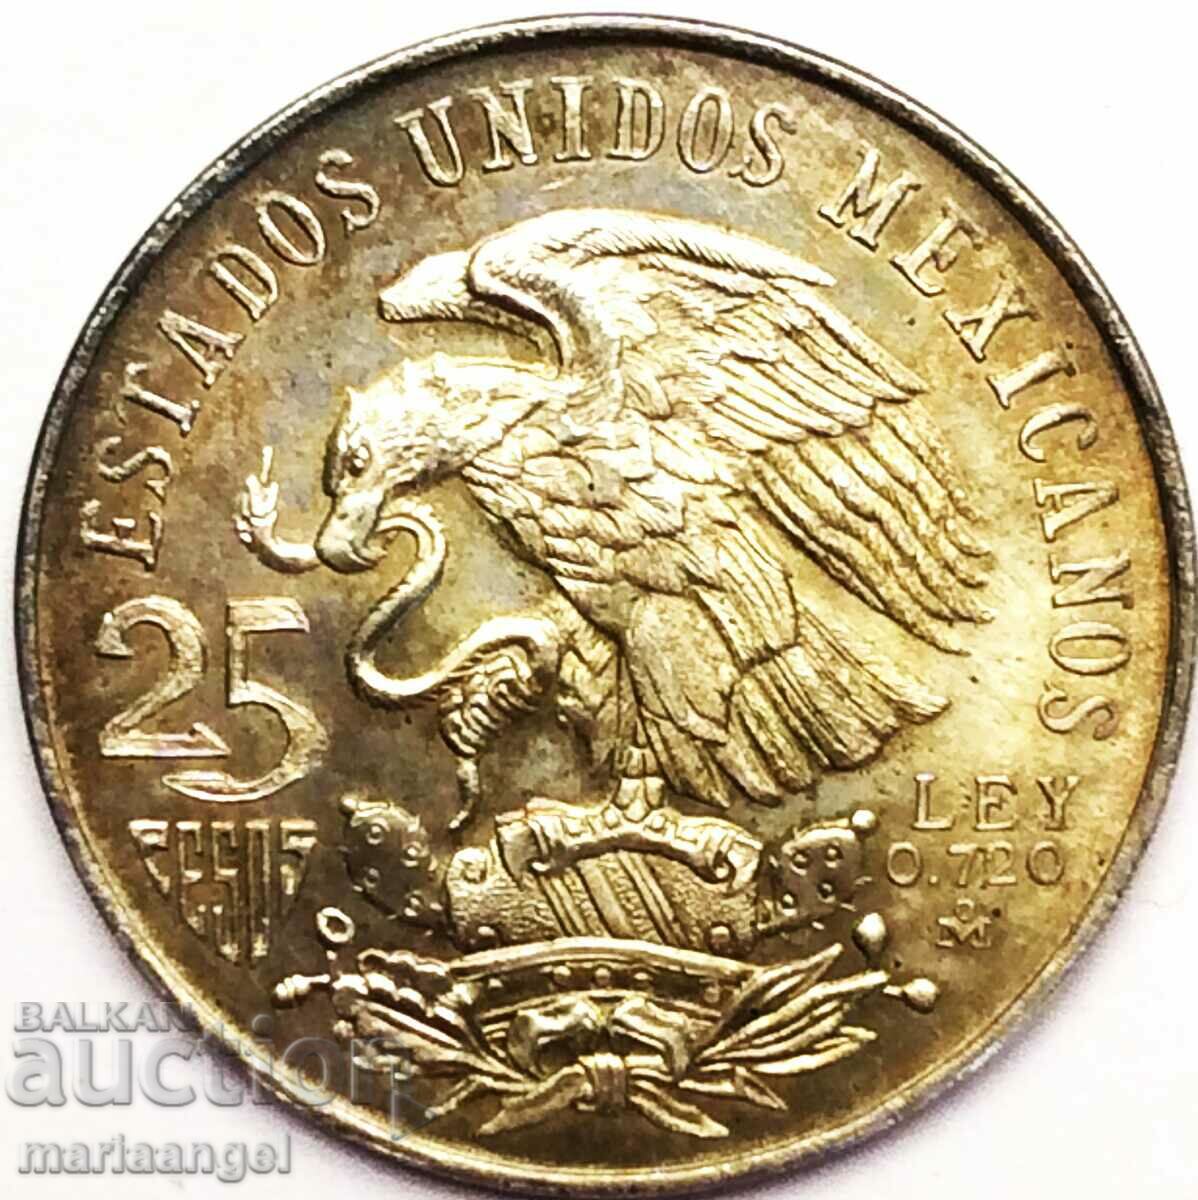 Mexic 1968 25 pesos Jocurile Olimpice 22,5 g patină argint